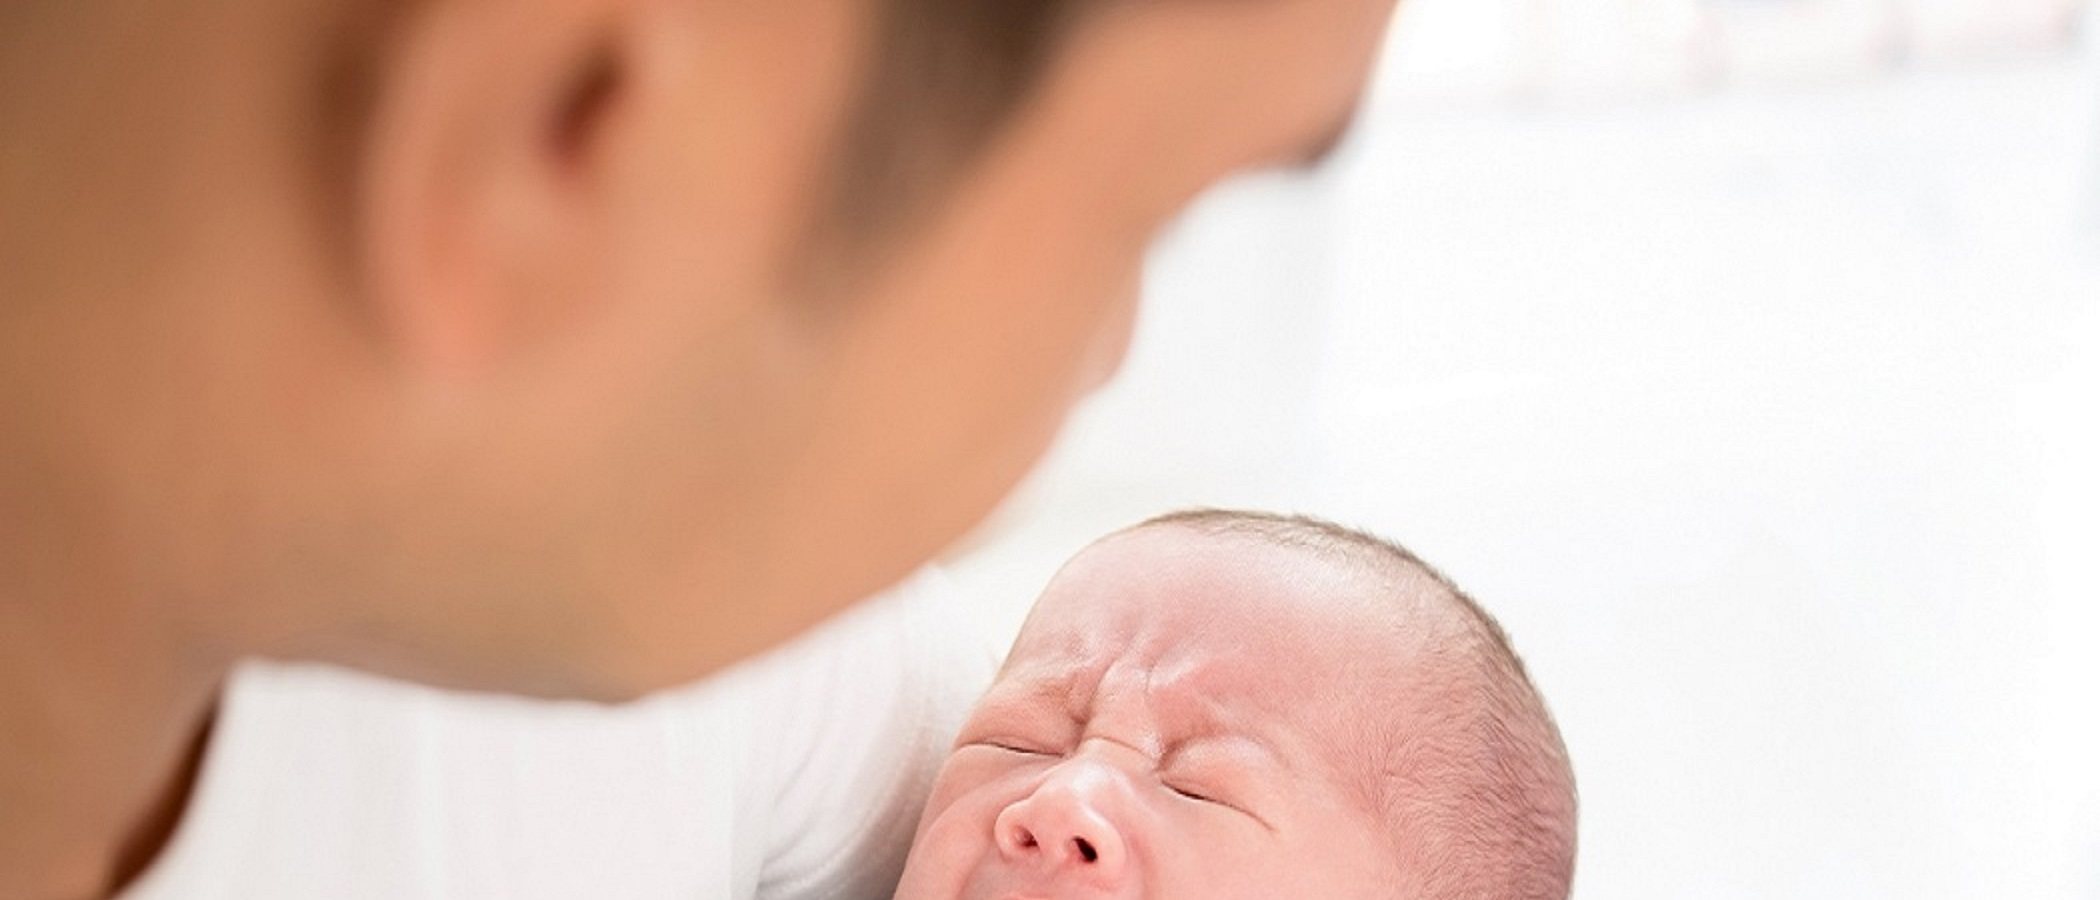 La importancia del contacto físico entre padres y bebés